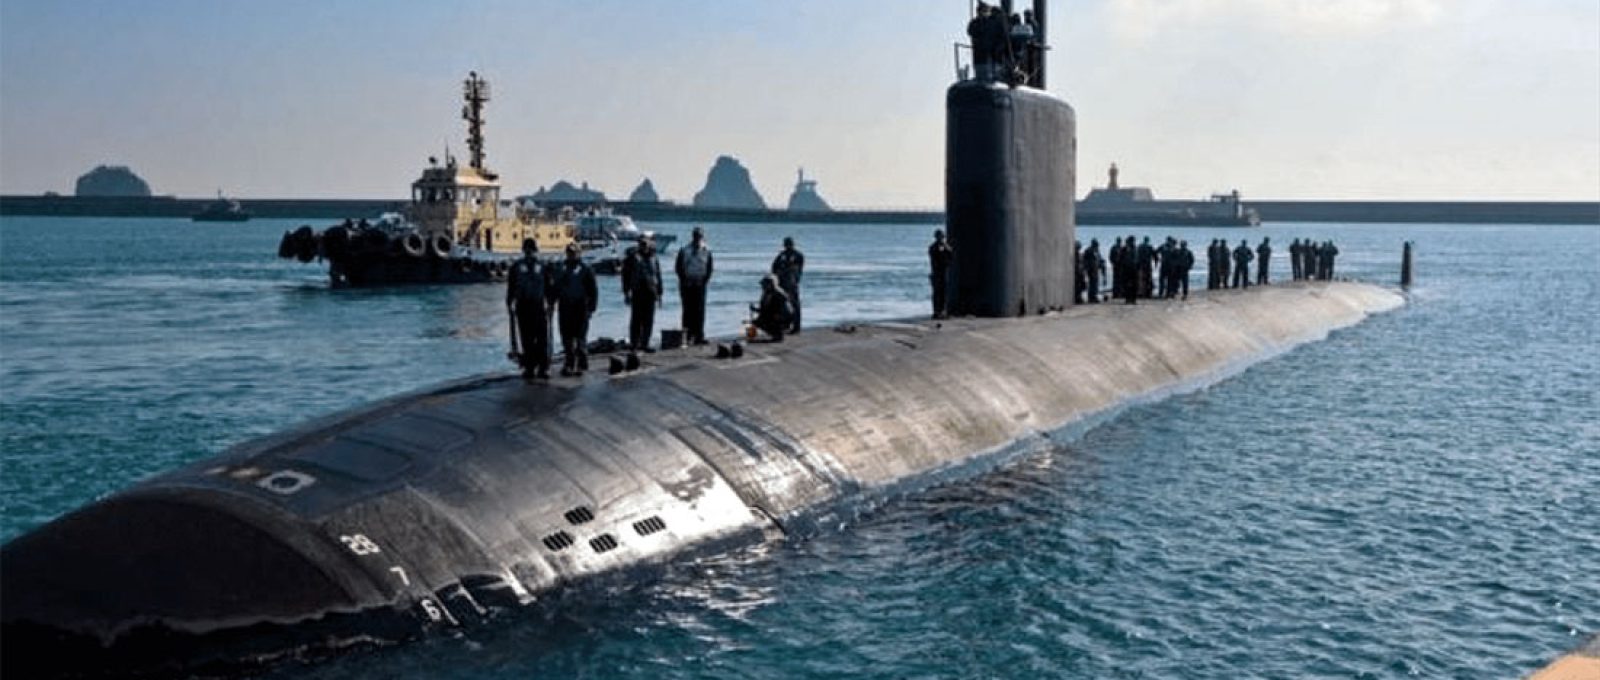 O submarino de ataque rápido movido a energia nuclear USS Springfield chega à base naval de Busan, na Coreia do Sul (US Pacific Fleet).